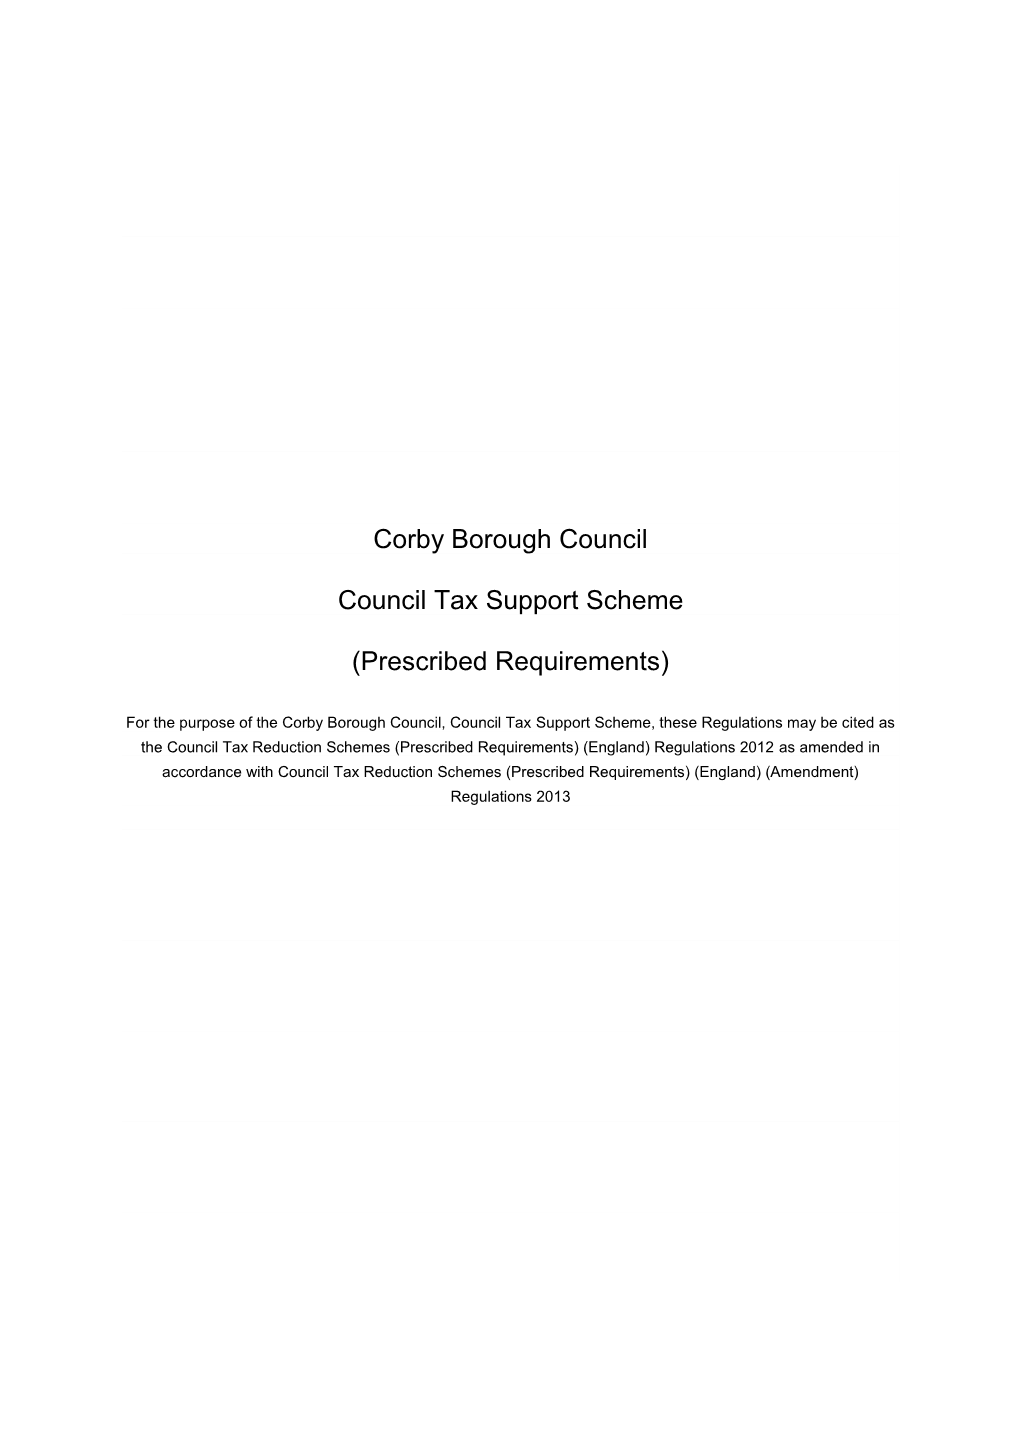 Corby Borough Council Council Tax Support Scheme (Prescribed